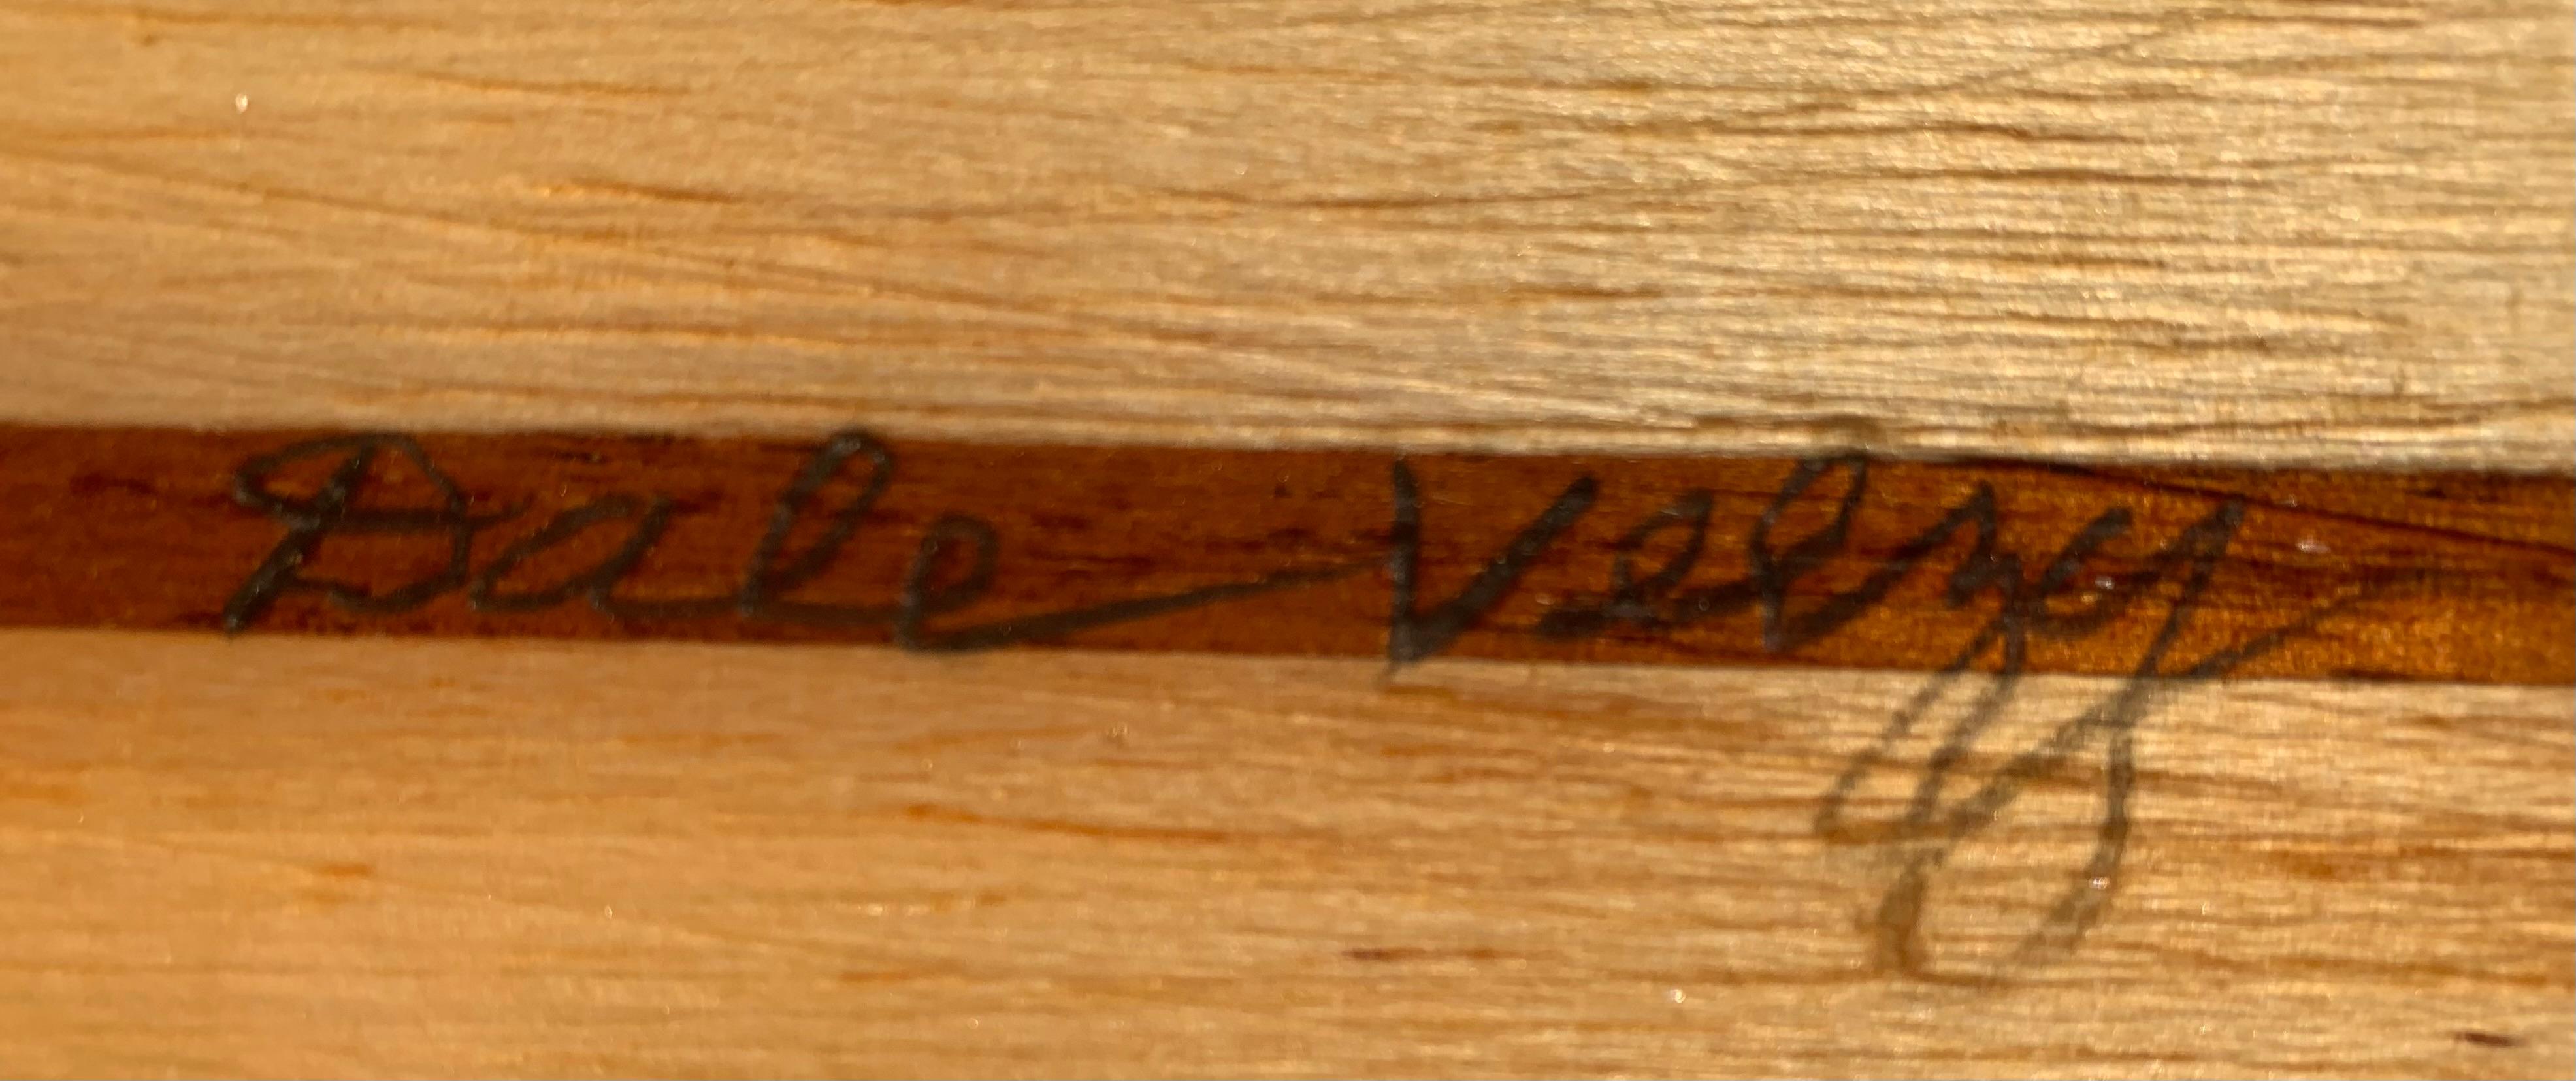 Fiberglass 1990s Vintage Dale Velzy balsawood longboard  For Sale